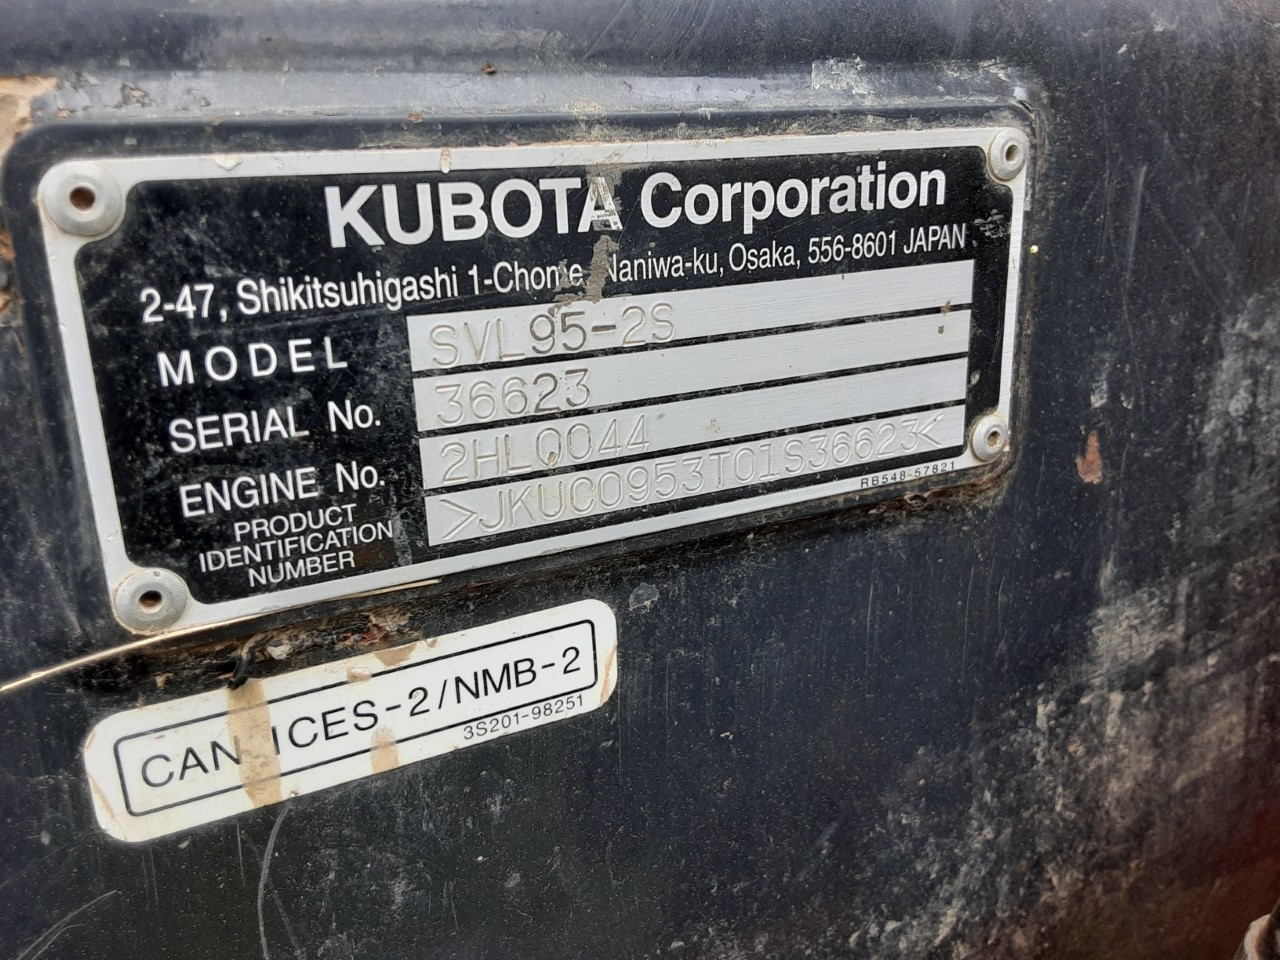 Kubota SVL95-2SHC